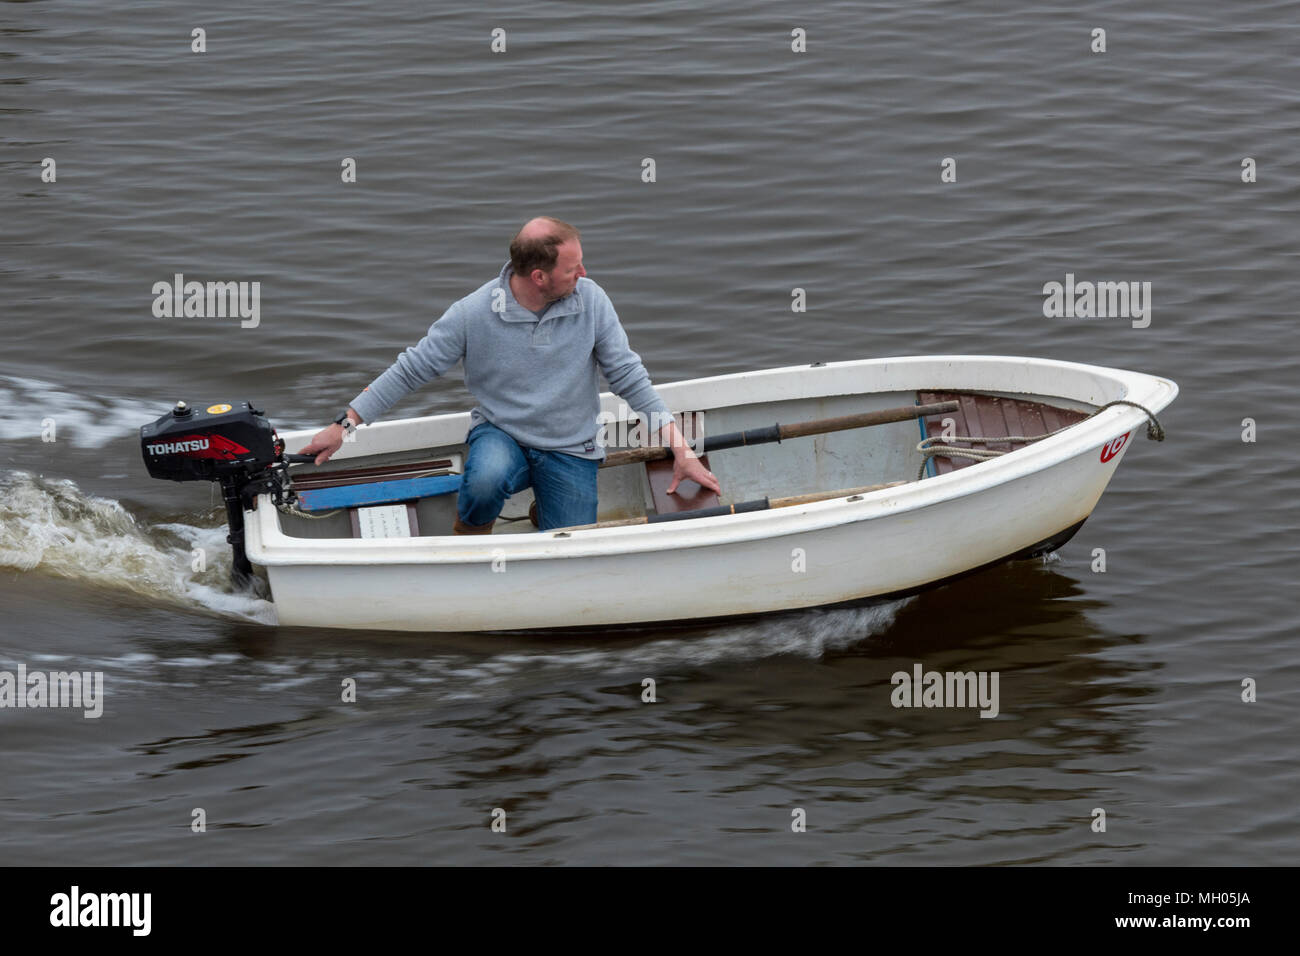 Un uomo con una piccola barca a remi o bando di gara per uno yacht con un motore fuoribordo essendo usati per guidare l'imbarcazione. Un uomo di mezza età in una piccola barca helming. Foto Stock